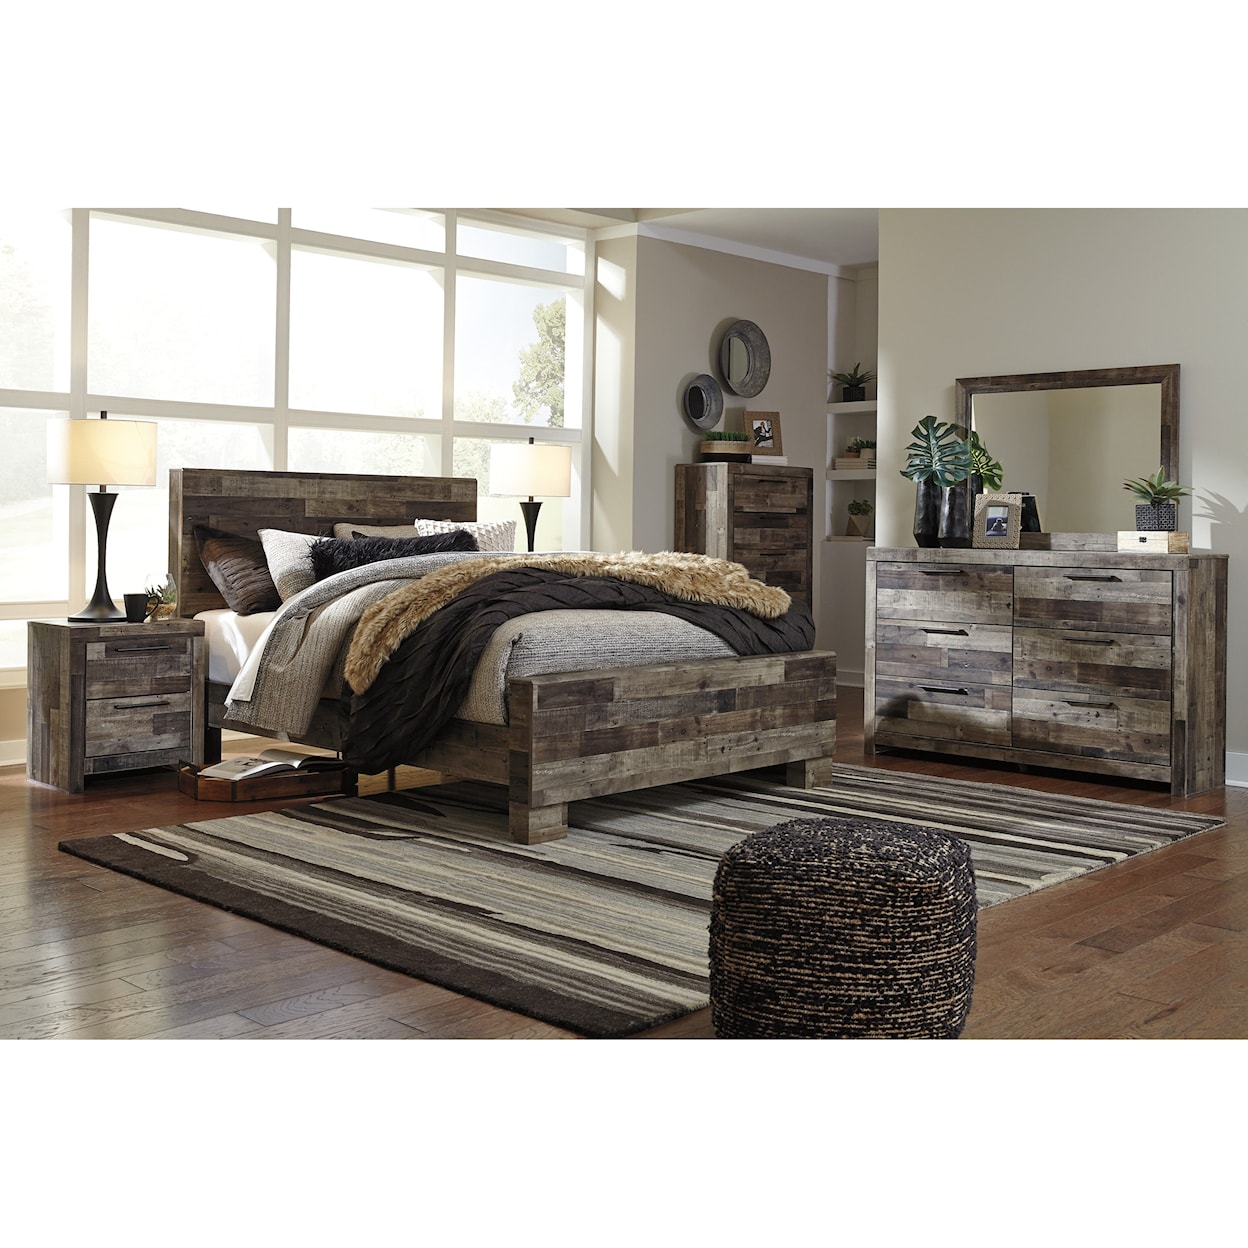 Ashley Furniture Benchcraft Derekson Queen Panel Bed